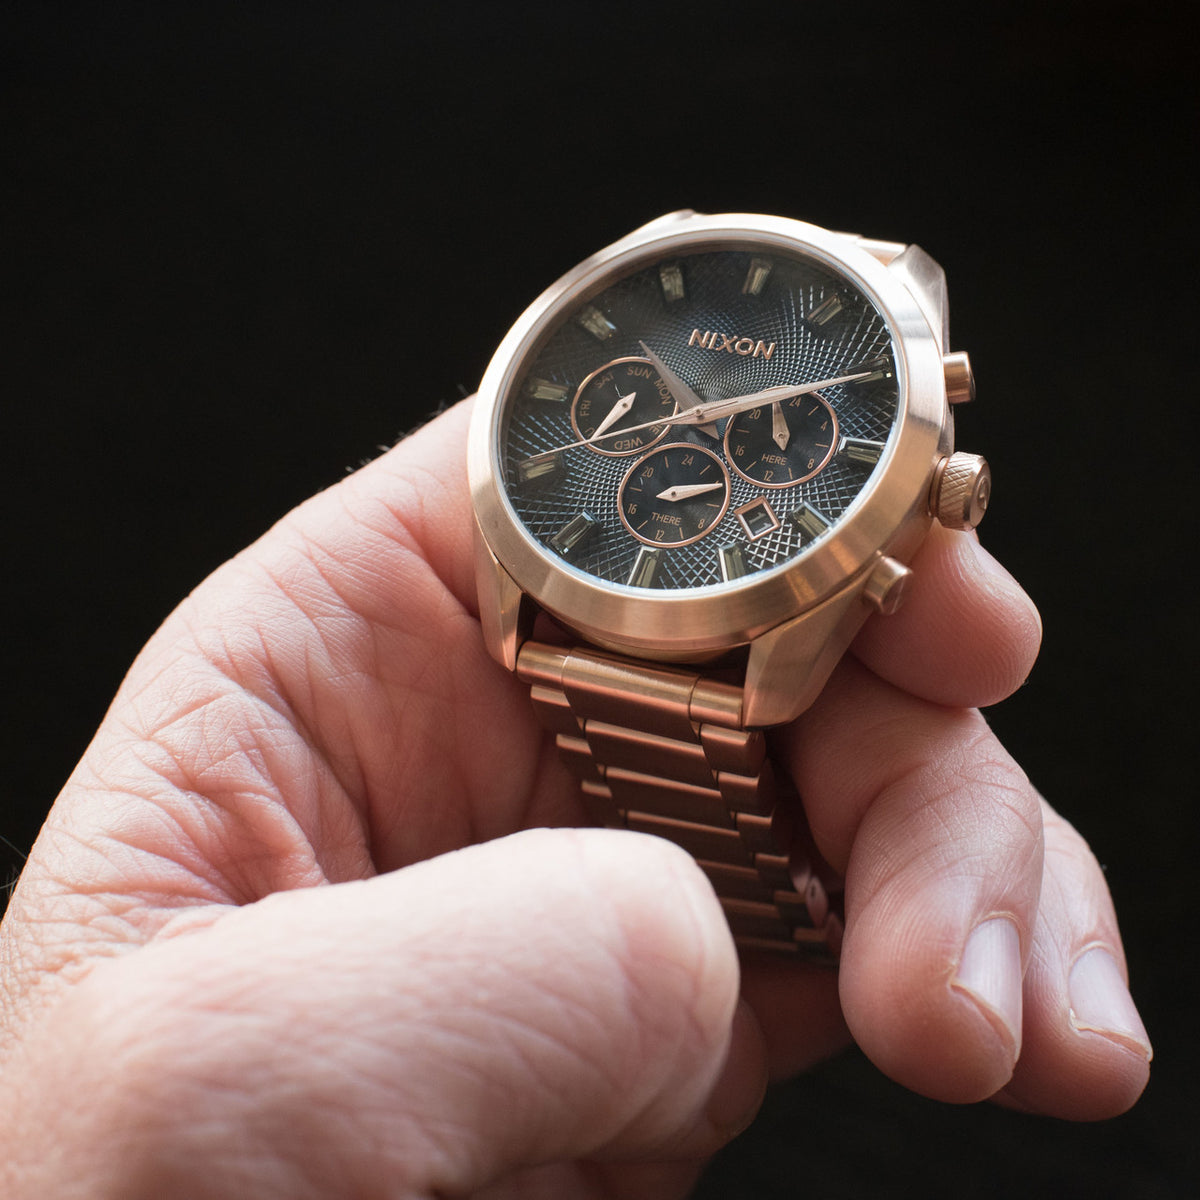 新品入荷 NIXON WATHCH 時計 BULLET CHRONO GUNMETAL 腕時計 通勤 通学 プレゼント